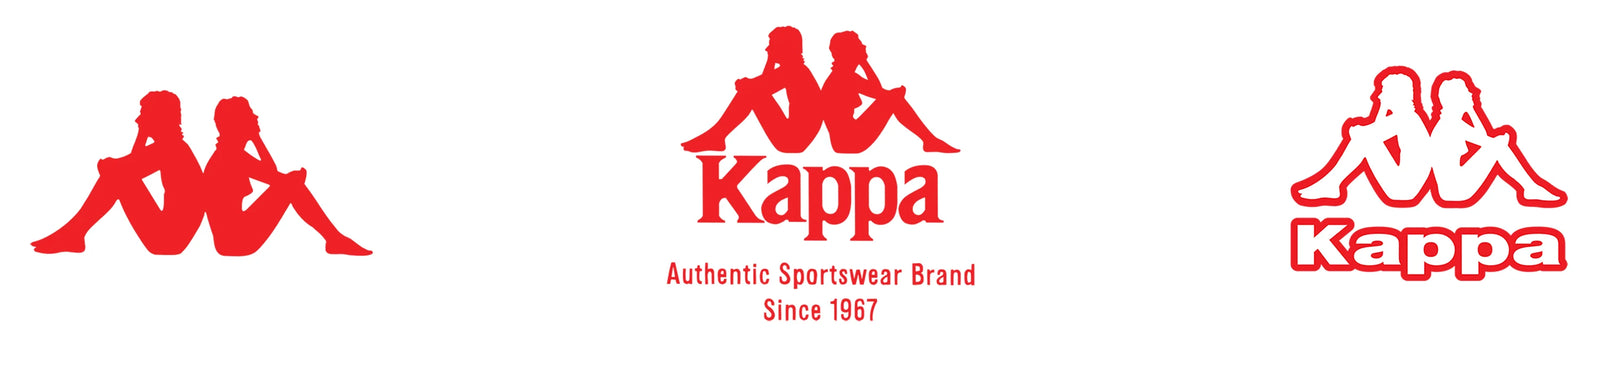 Kappa brand profile U.S. 2022